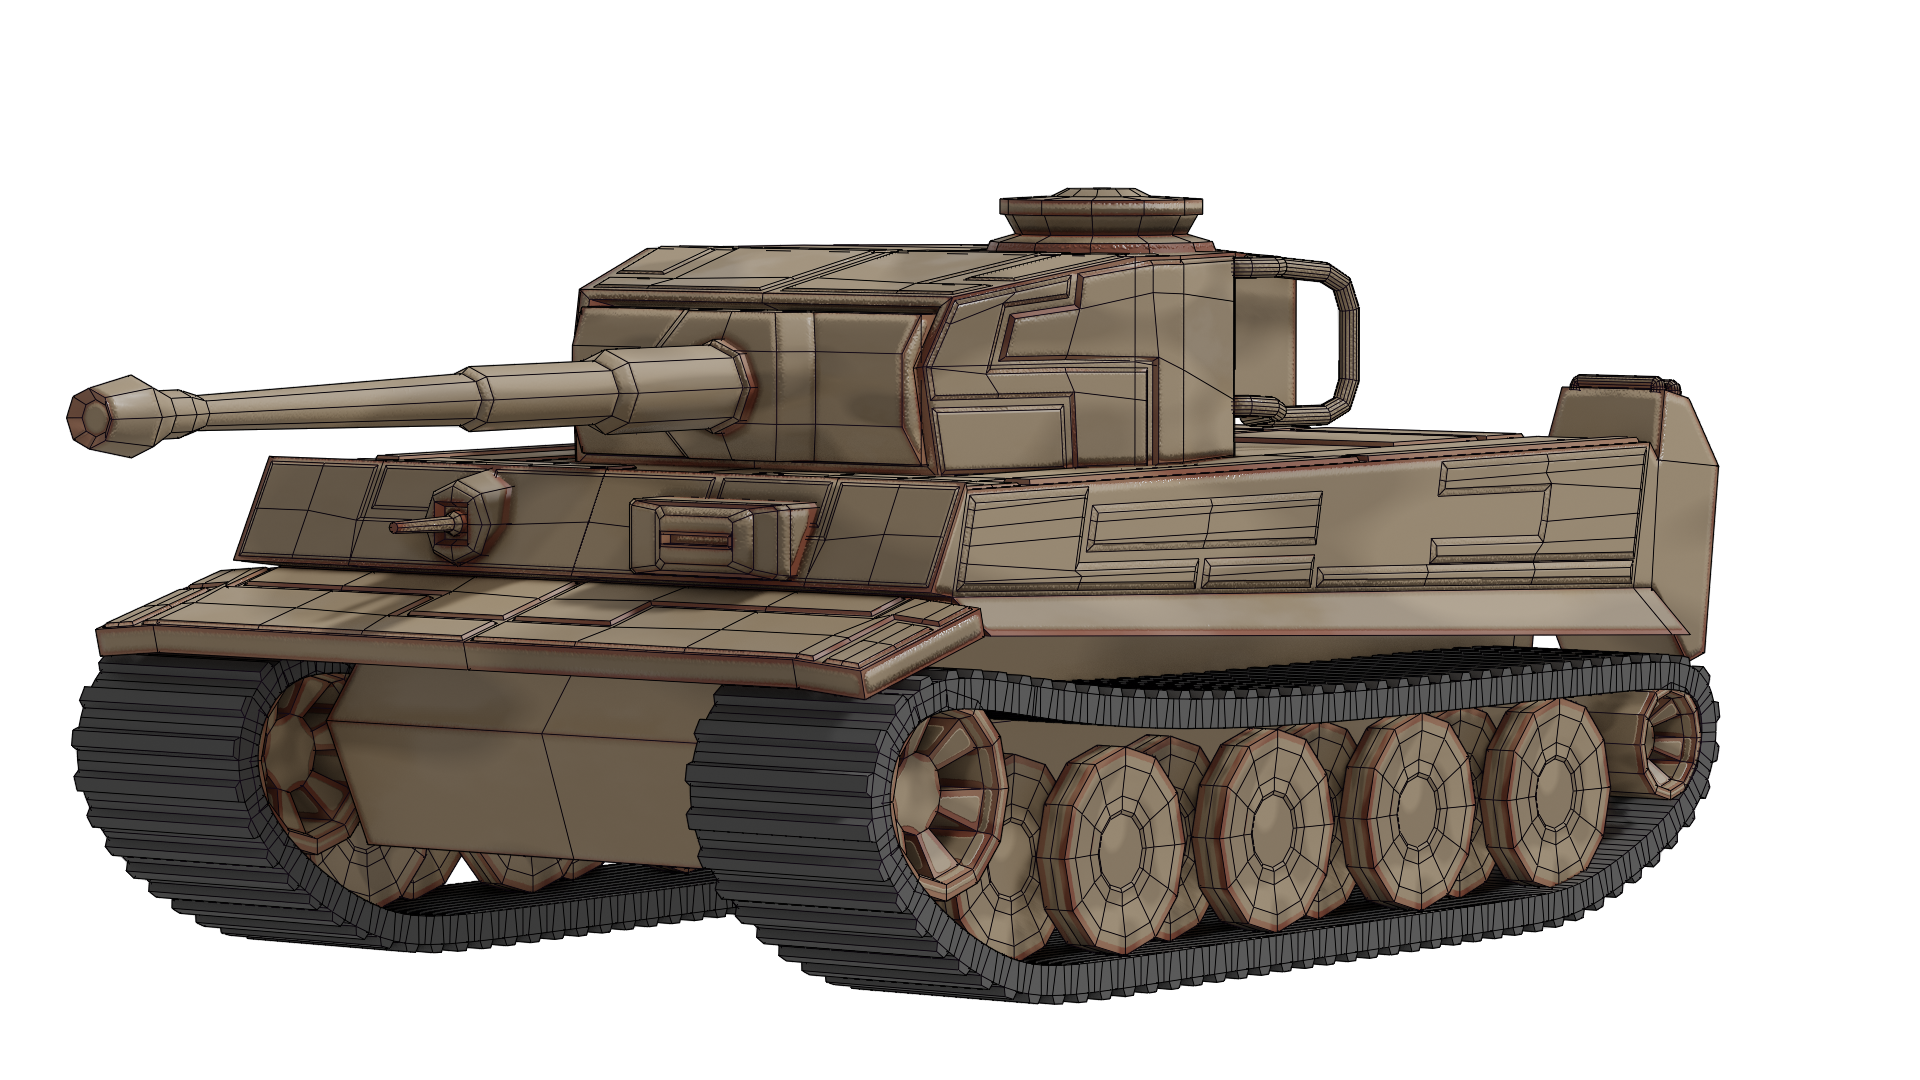 Tiger 1 Tank 3D Model